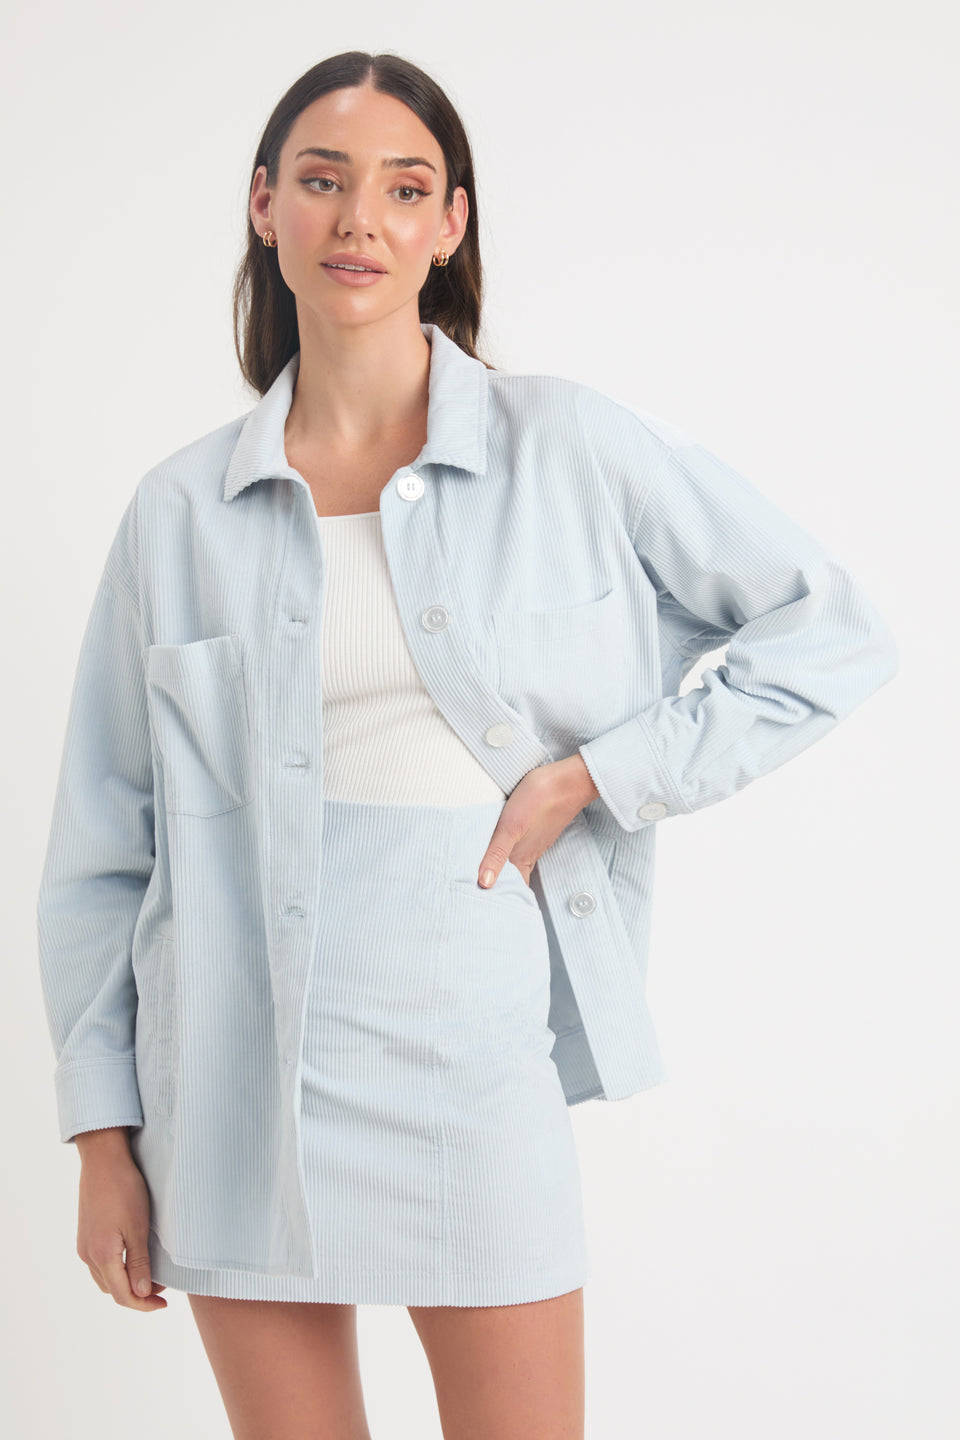 Buy Women's Blazer Jackets Online in Australia | KOOKAÏ